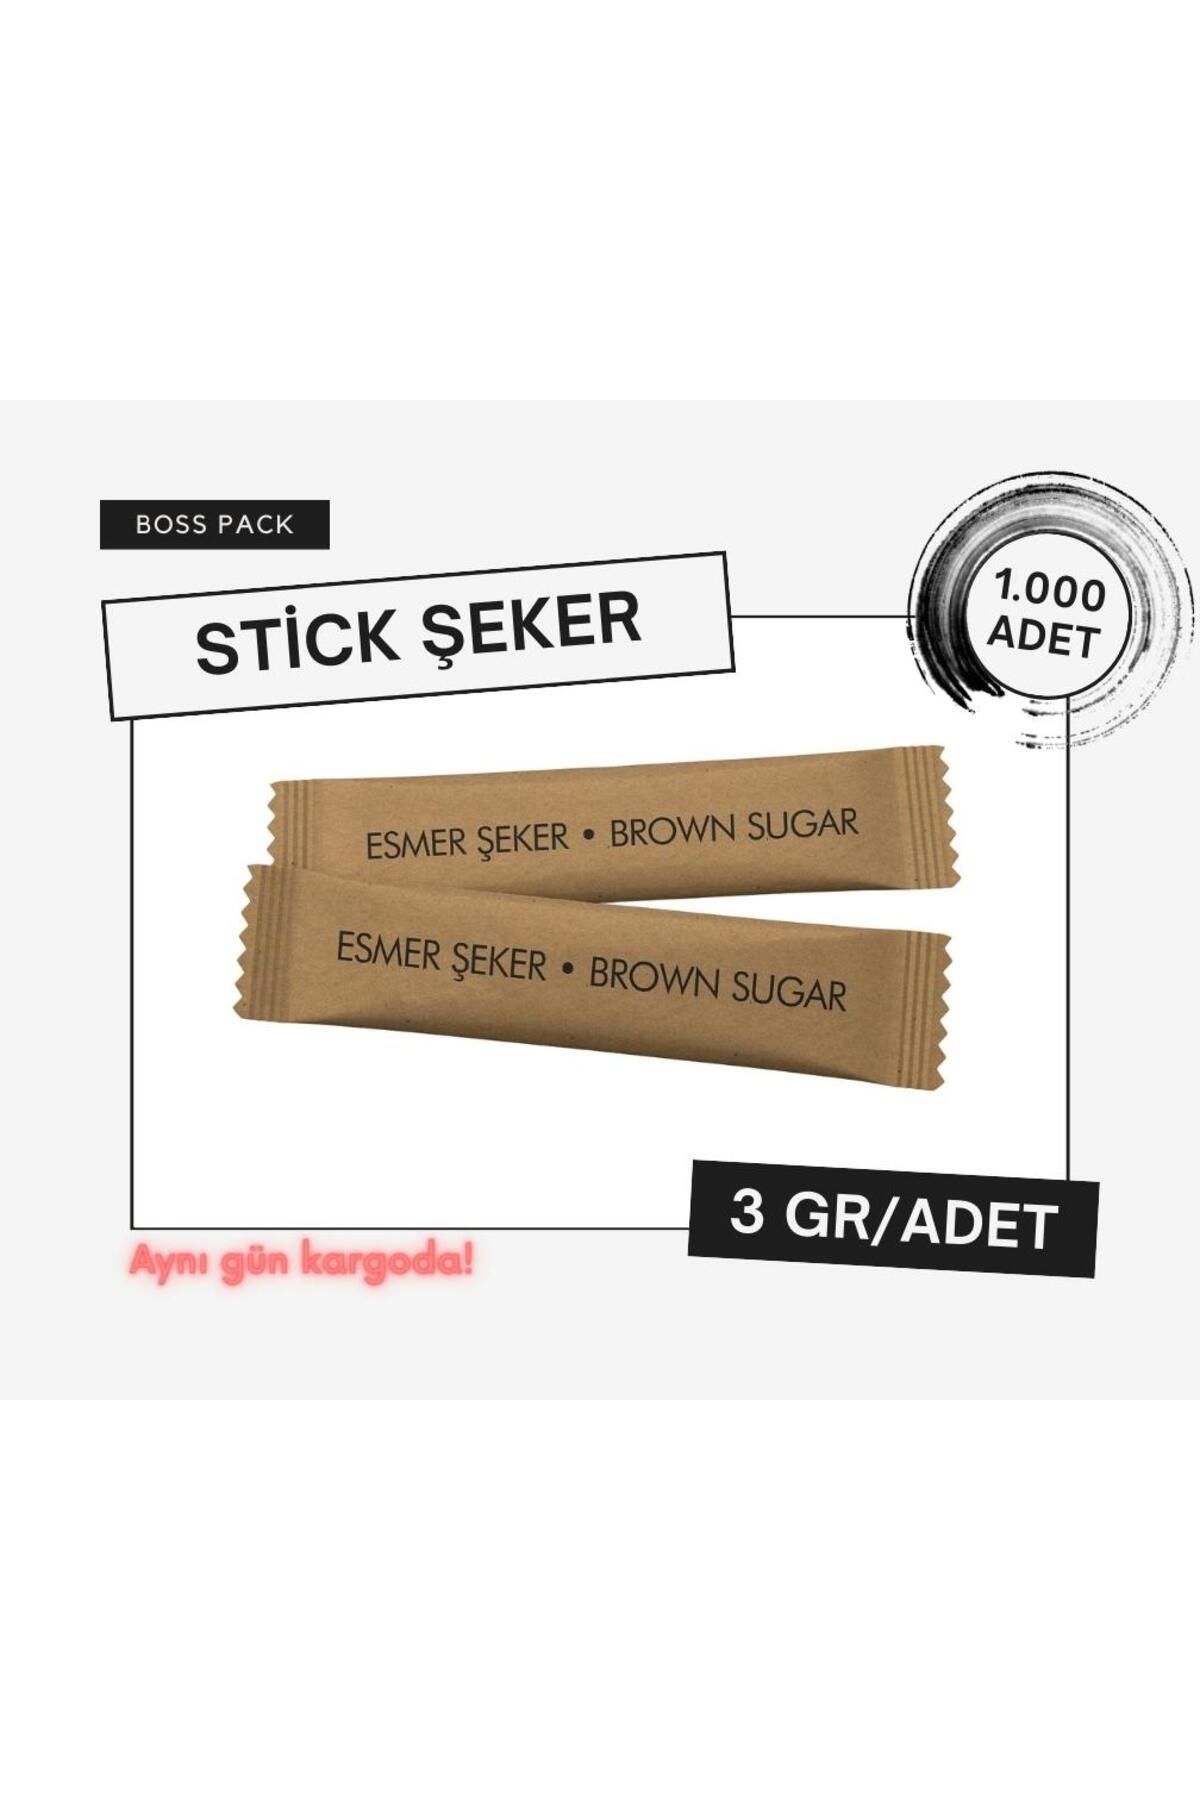 BossPack Stick Esmer Toz Şeker (3 gr/adet) - 1.000 adet